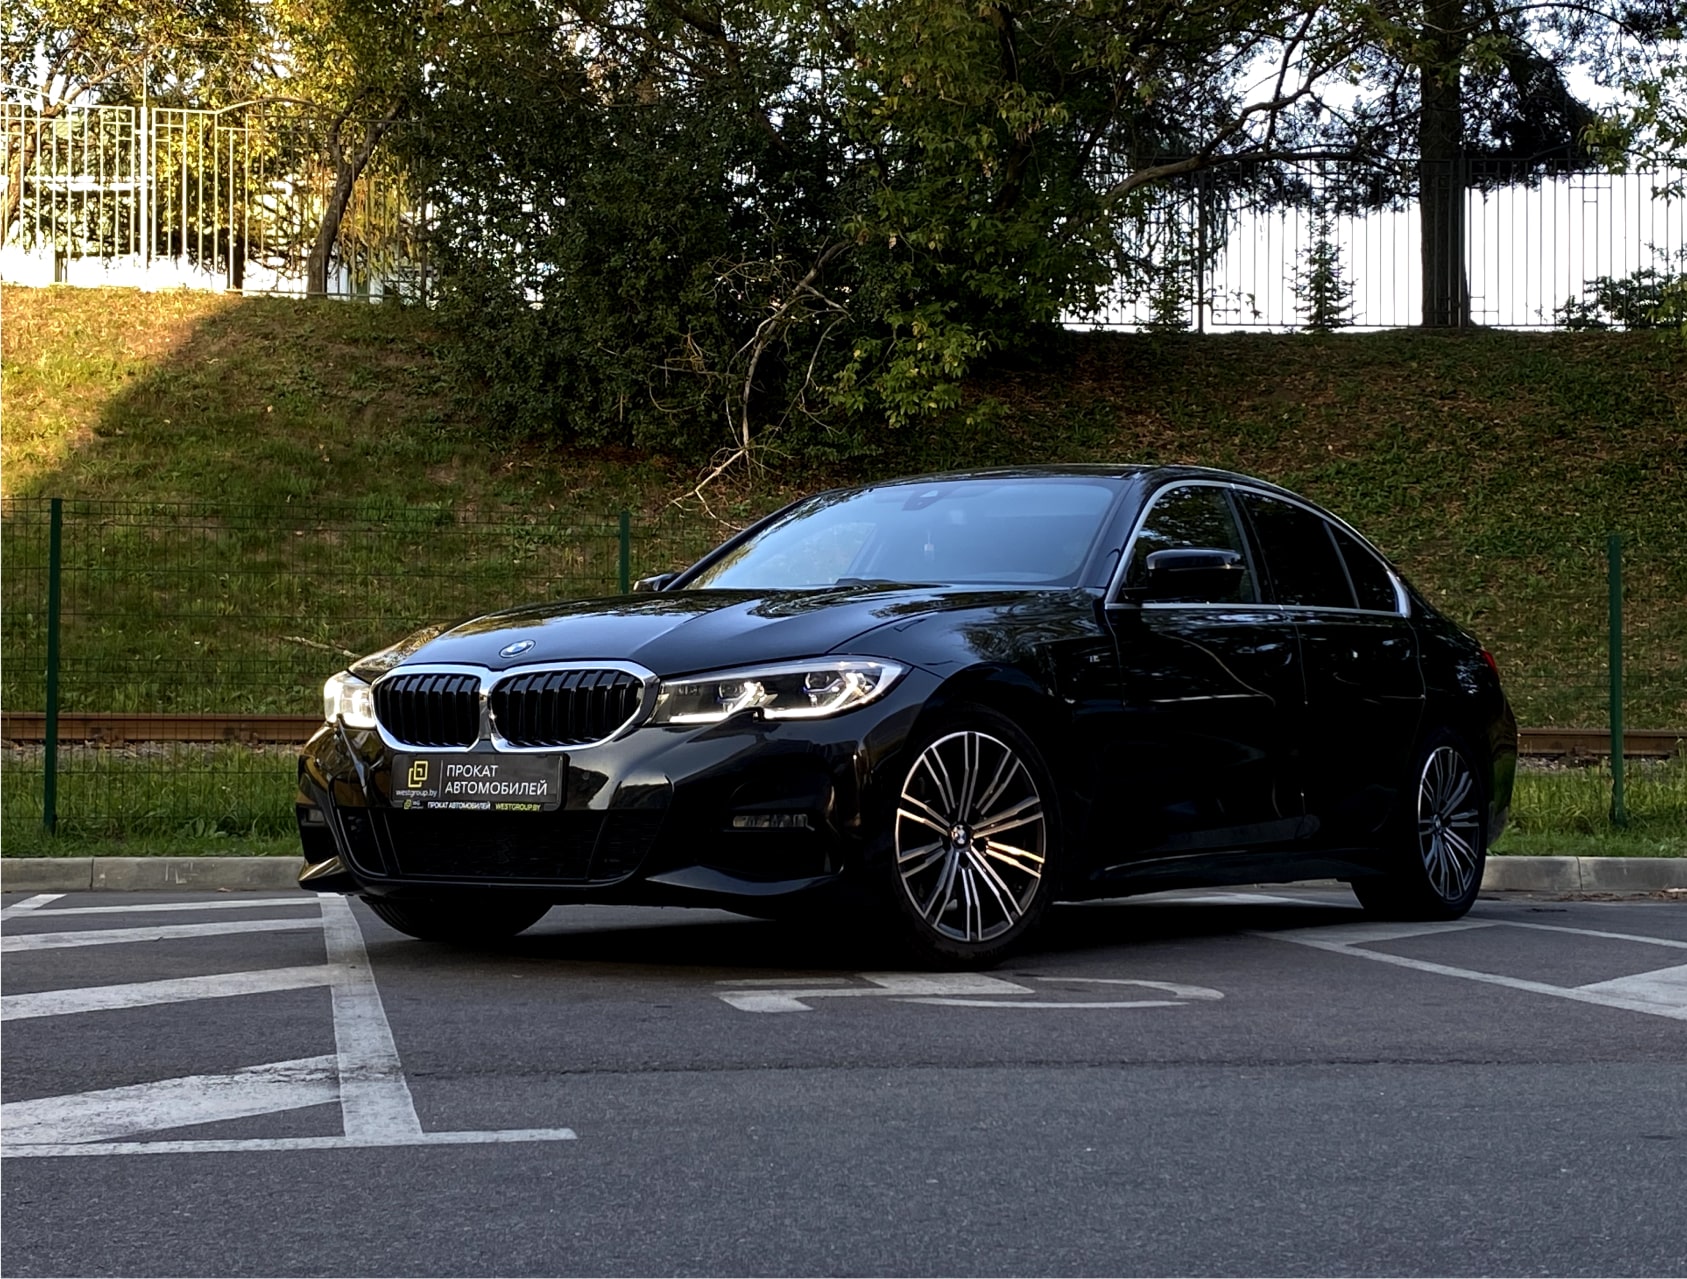 Аренда  BMW 320d G20 M-sport  3 класса 2019 года в городе Минск от 84 $/сутки,  двигатель: Бензин , объем 2.0 литров, КАСКО (Мультидрайв), без водителя, вид 1 - West Group